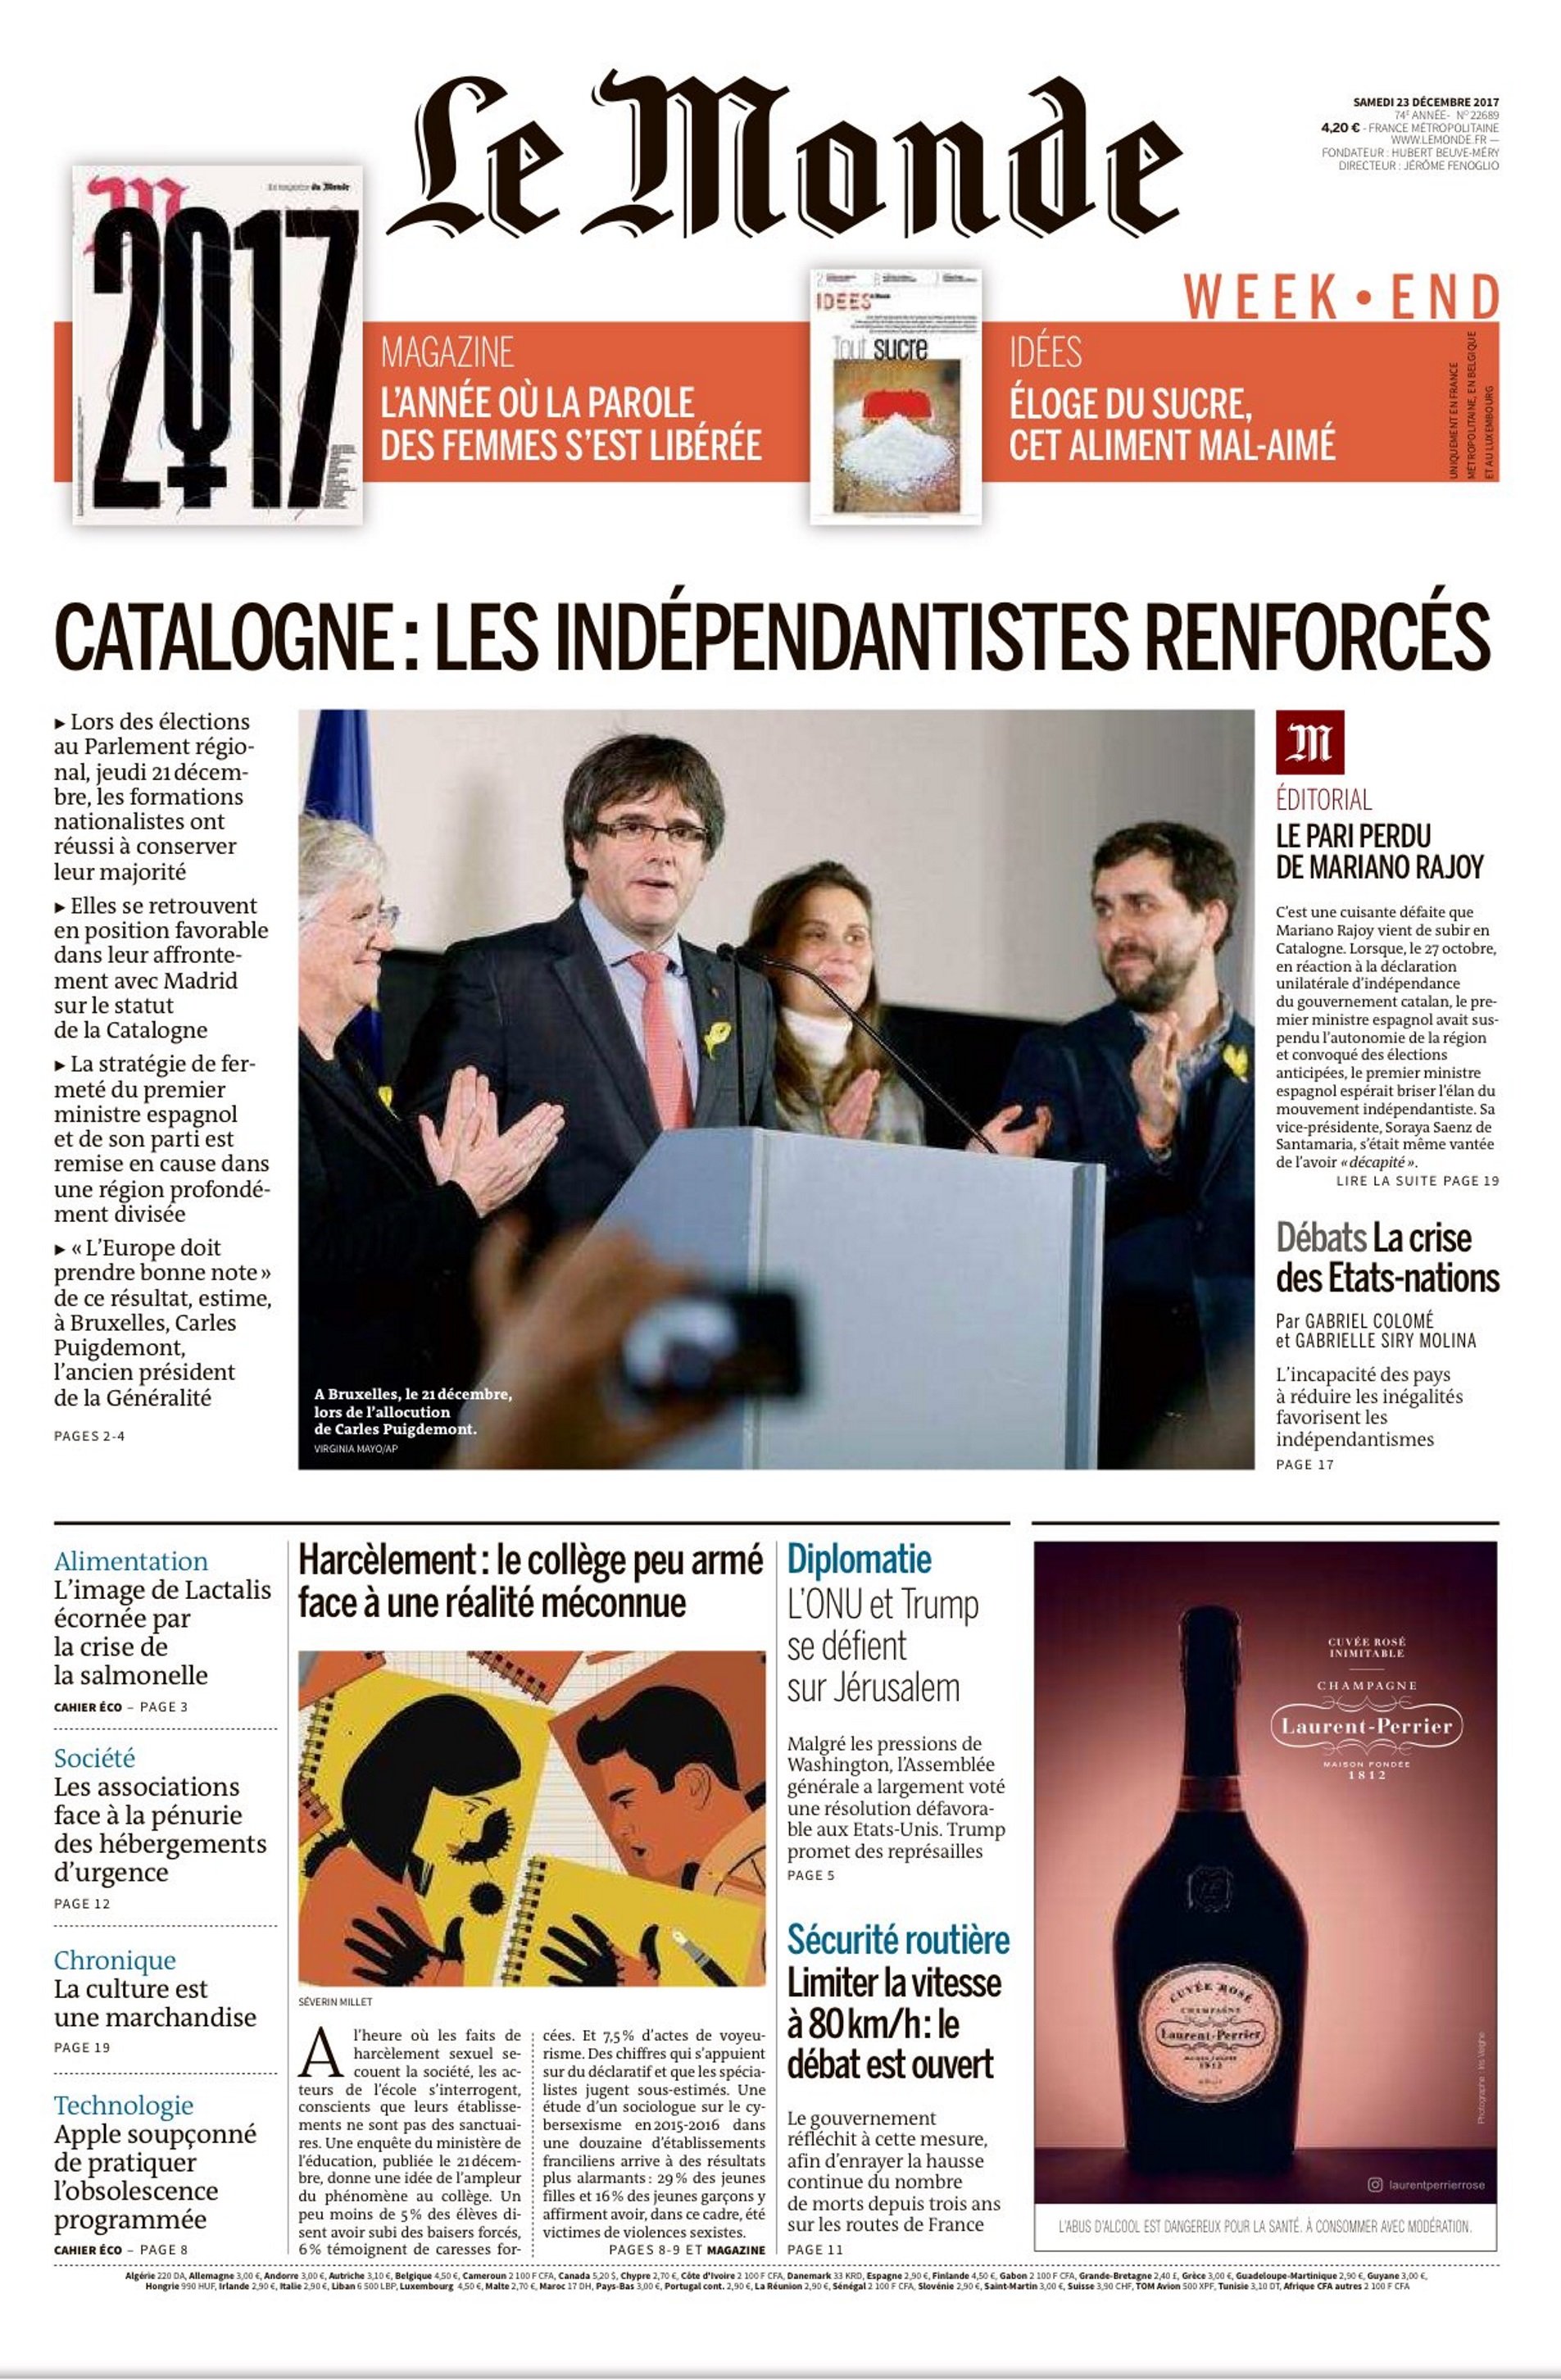 Le Monde canta la caña a Rajoy en un duro editorial